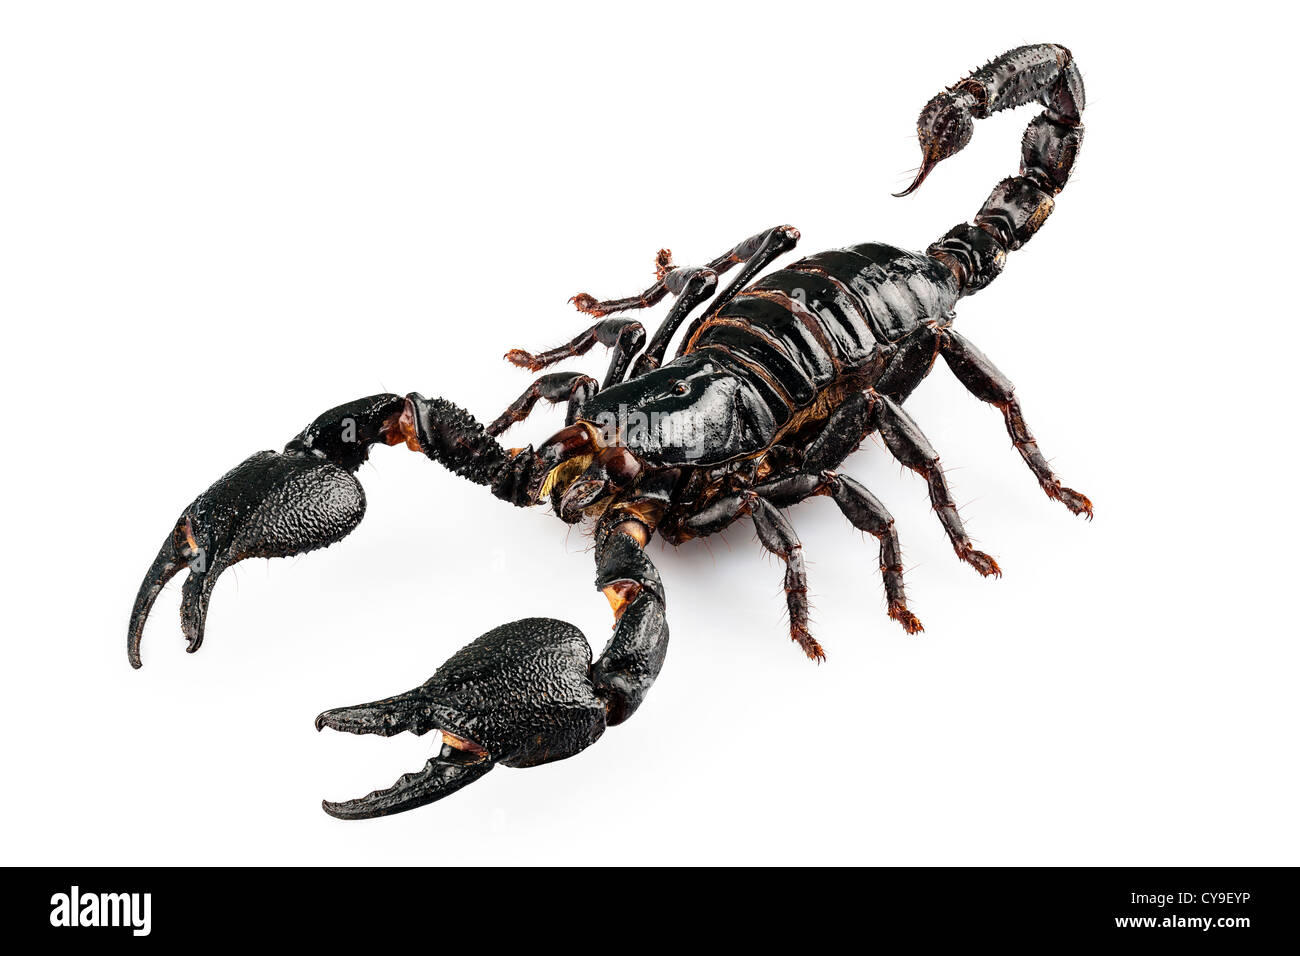 Black scorpio species Heterometrus cyaneus Stock Photo